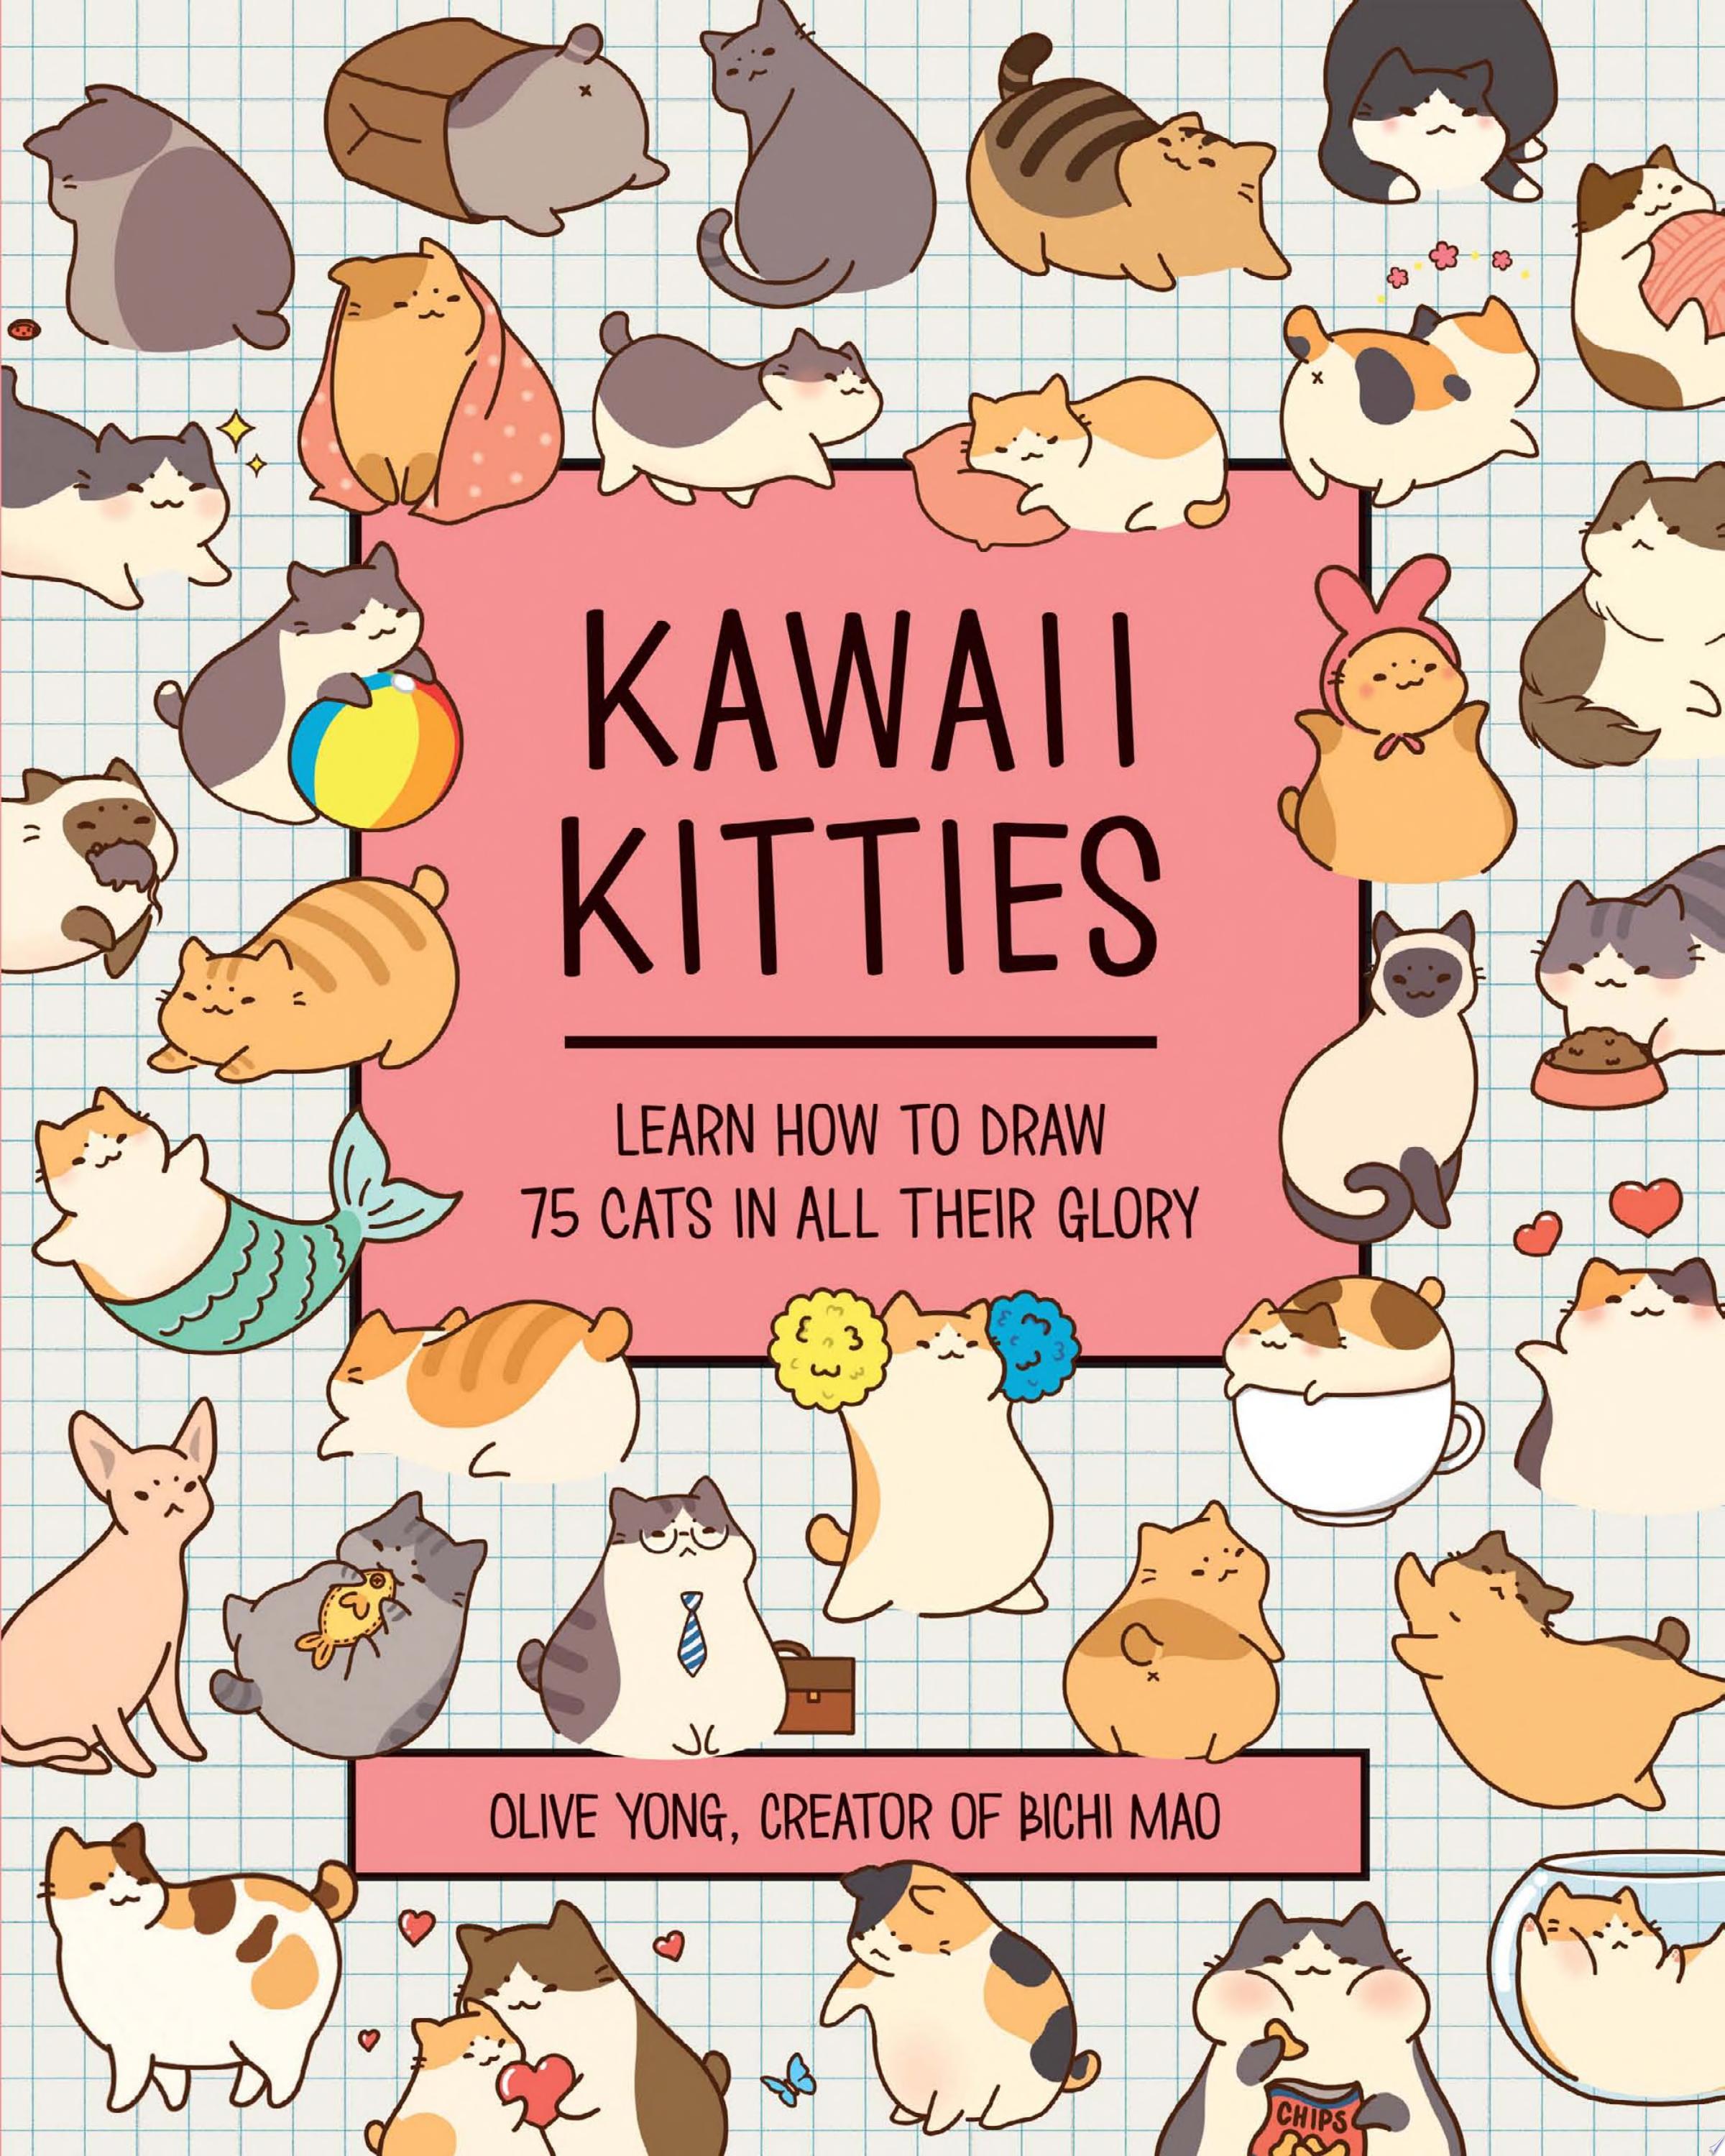 Image for "Kawaii Kitties"